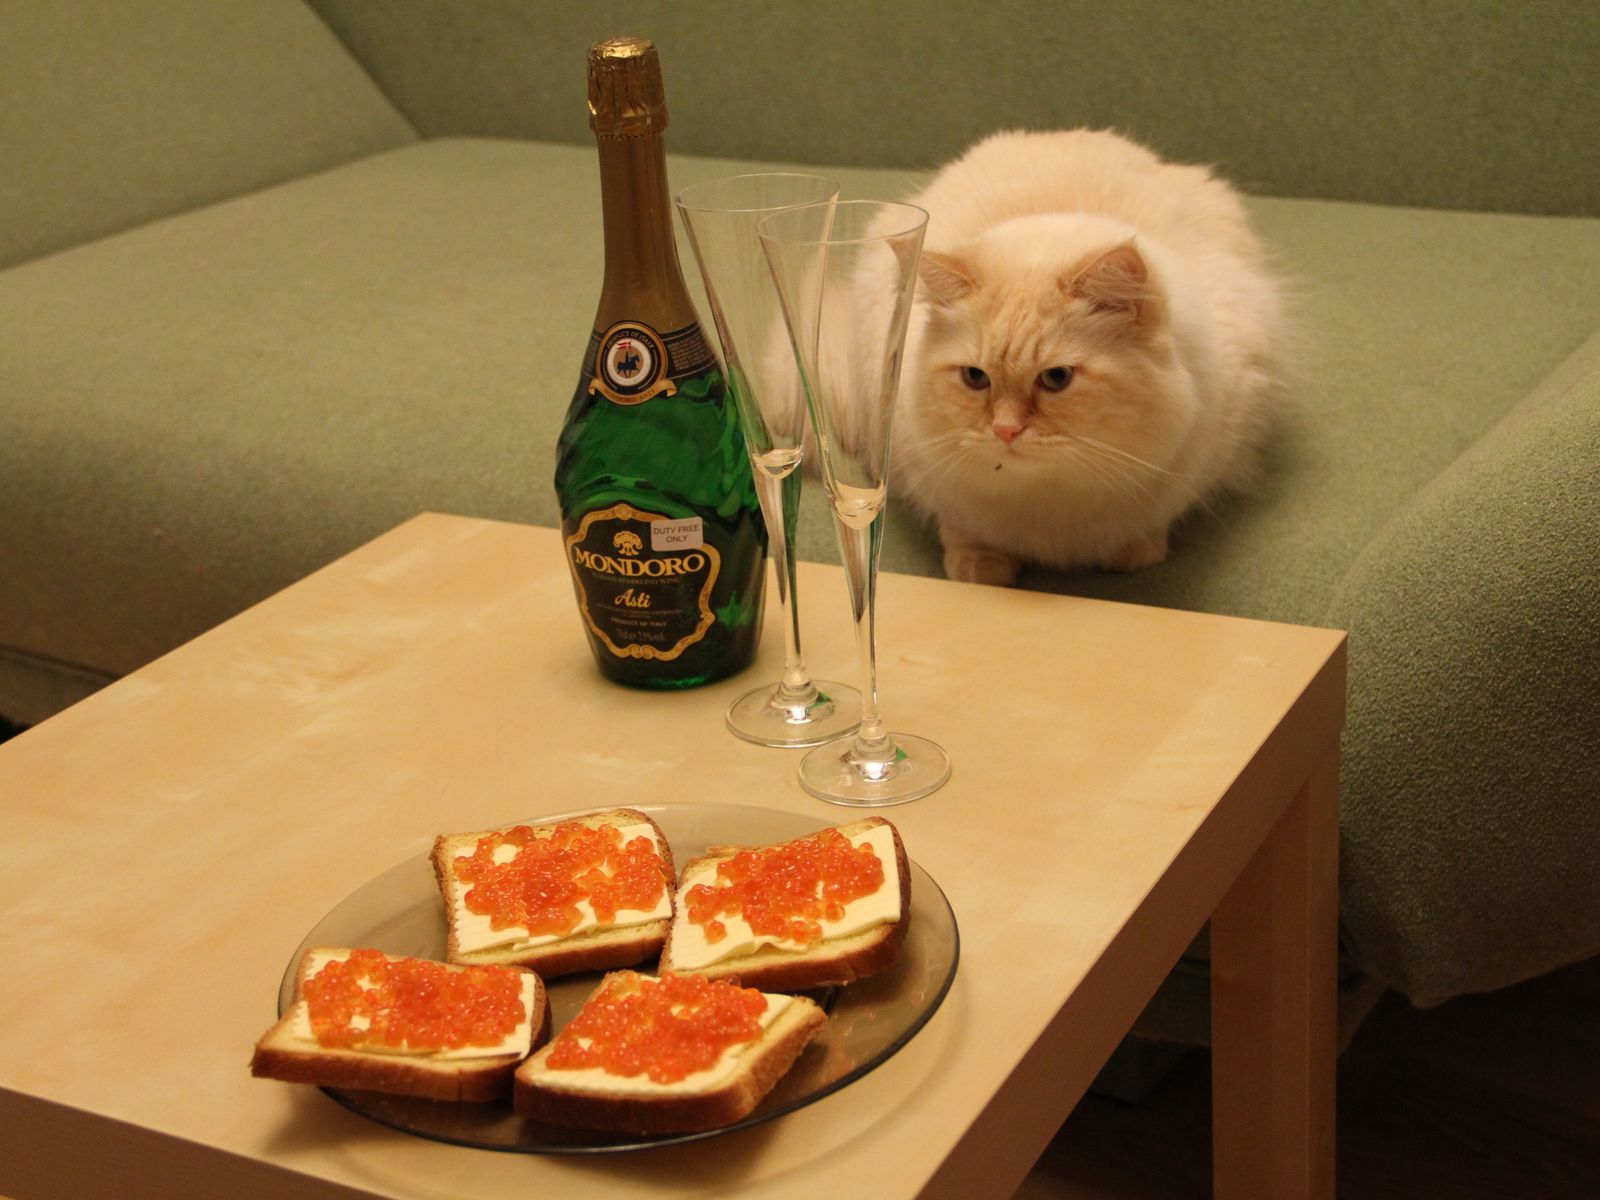 фотографии рыжих котов, рыжий кот пушистый красивый смотрит на бутерброды с икрой